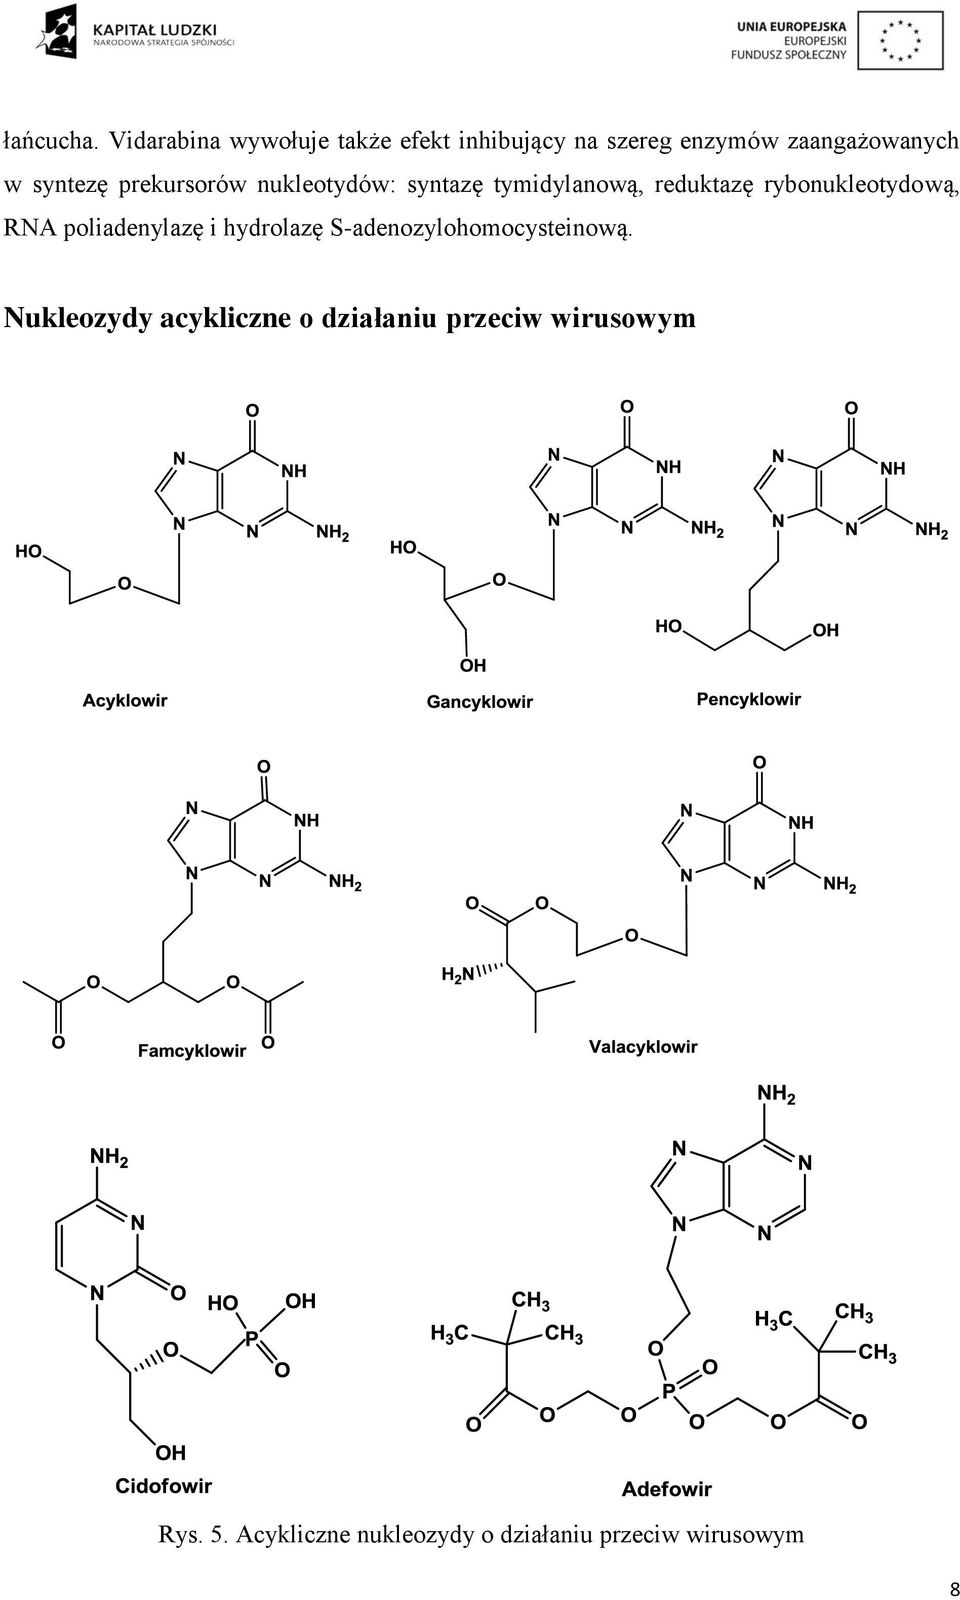 prekursorów nukleotydów: syntazę tymidylanową, reduktazę rybonukleotydową, RNA